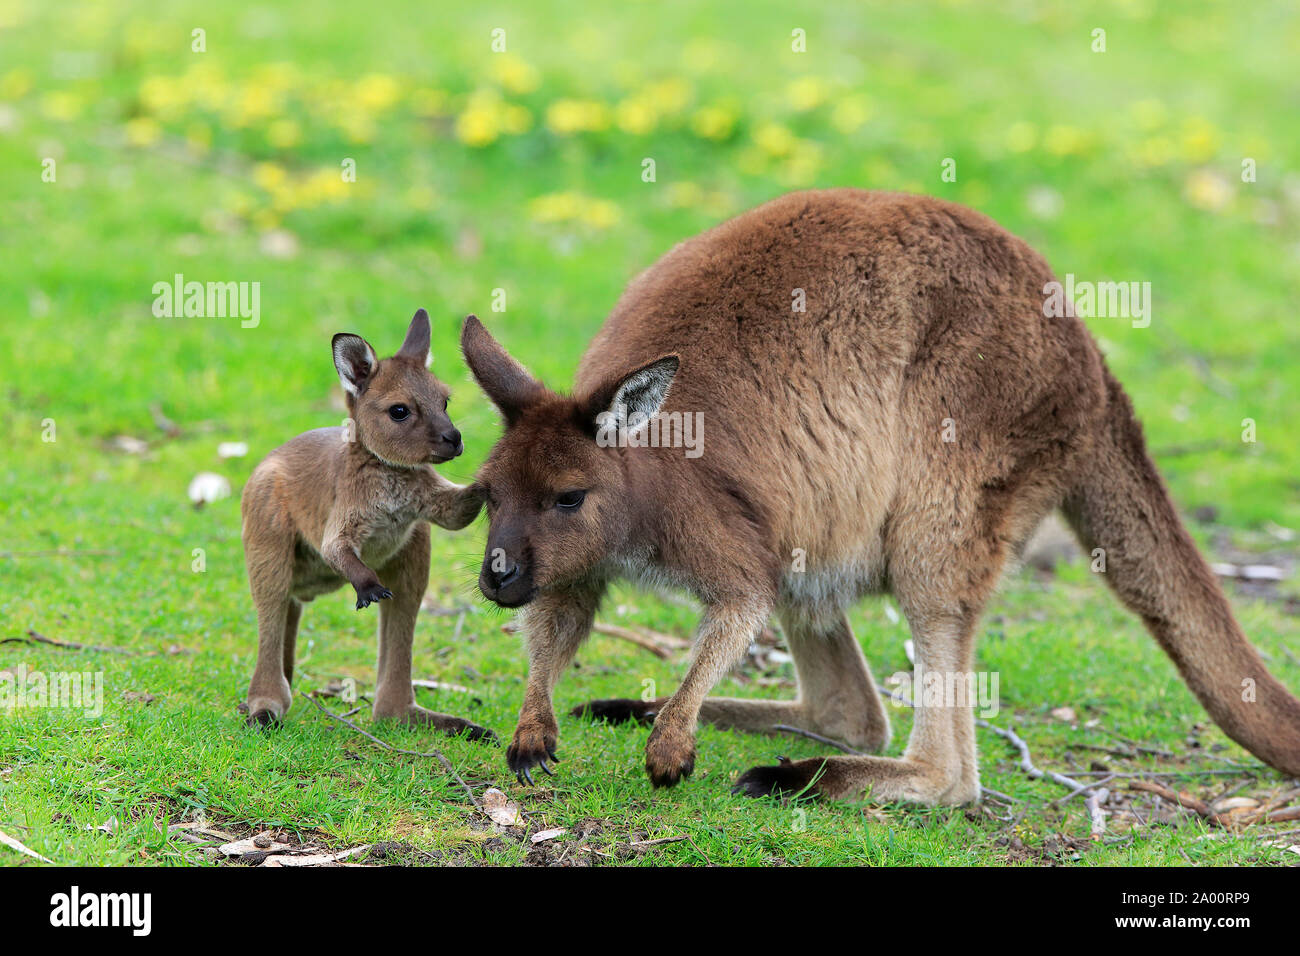 La Isla de los canguros canguro con las mujeres adultas jóvenes, Mount Lofty, South Australia, Australia (Macropus fuliginosus fuliginosus) Foto de stock